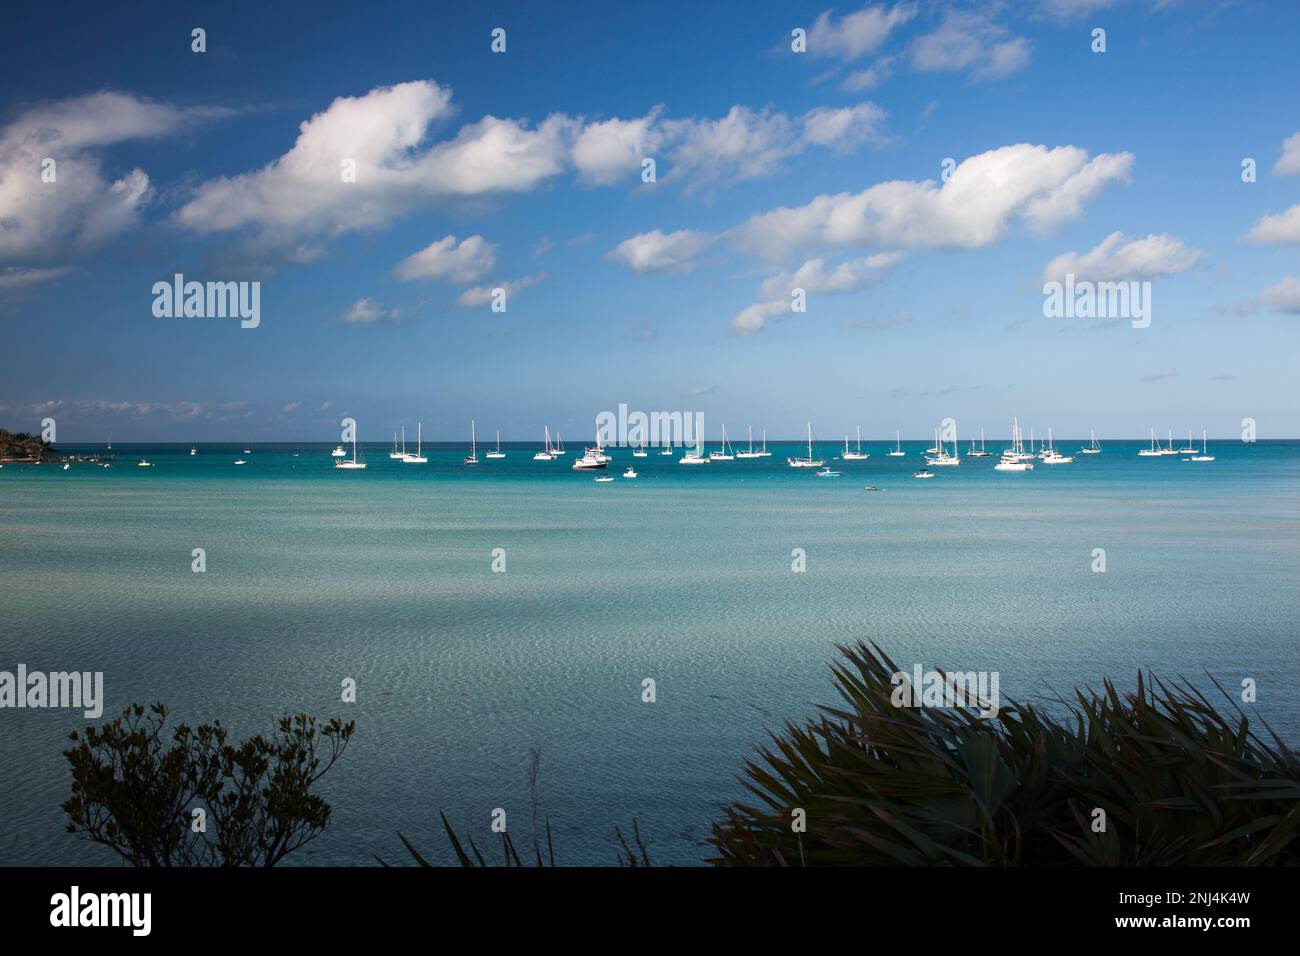 sailboats moored at Black Point, Exumas, Bahamas Stock Photo